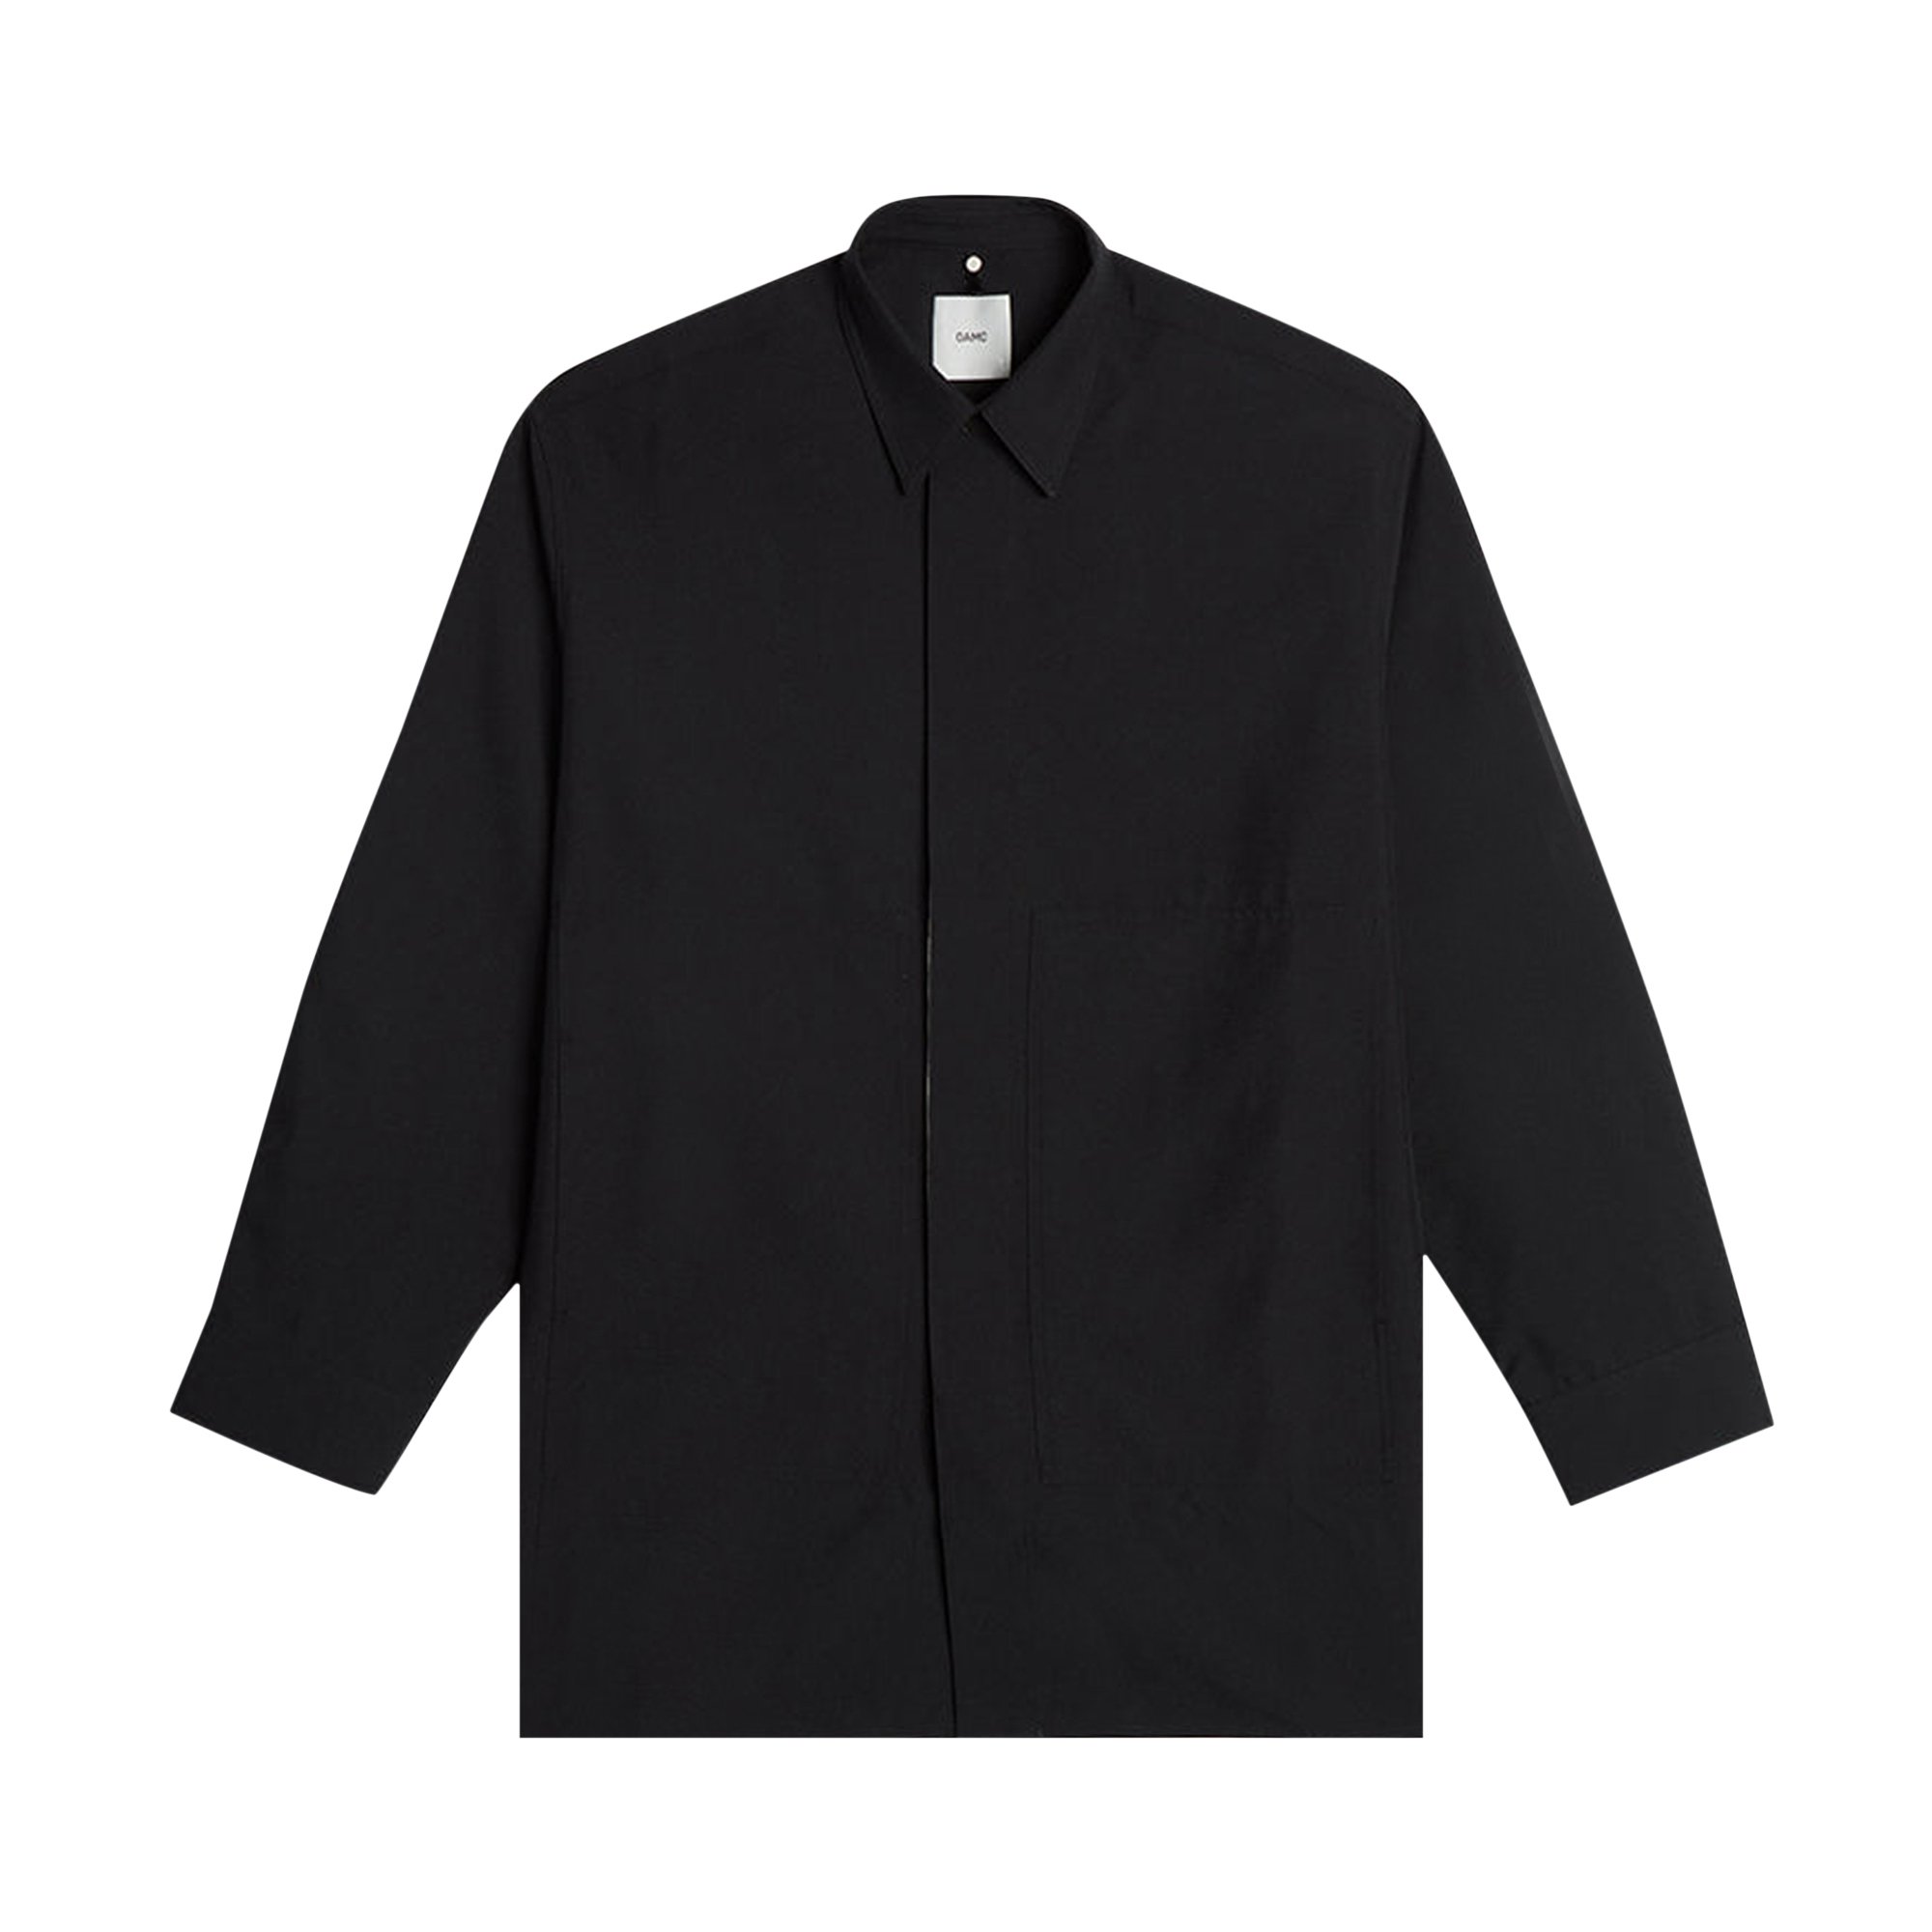 Buy OAMC Davis Shirt 'Black' - OAMR601025 001 | GOAT